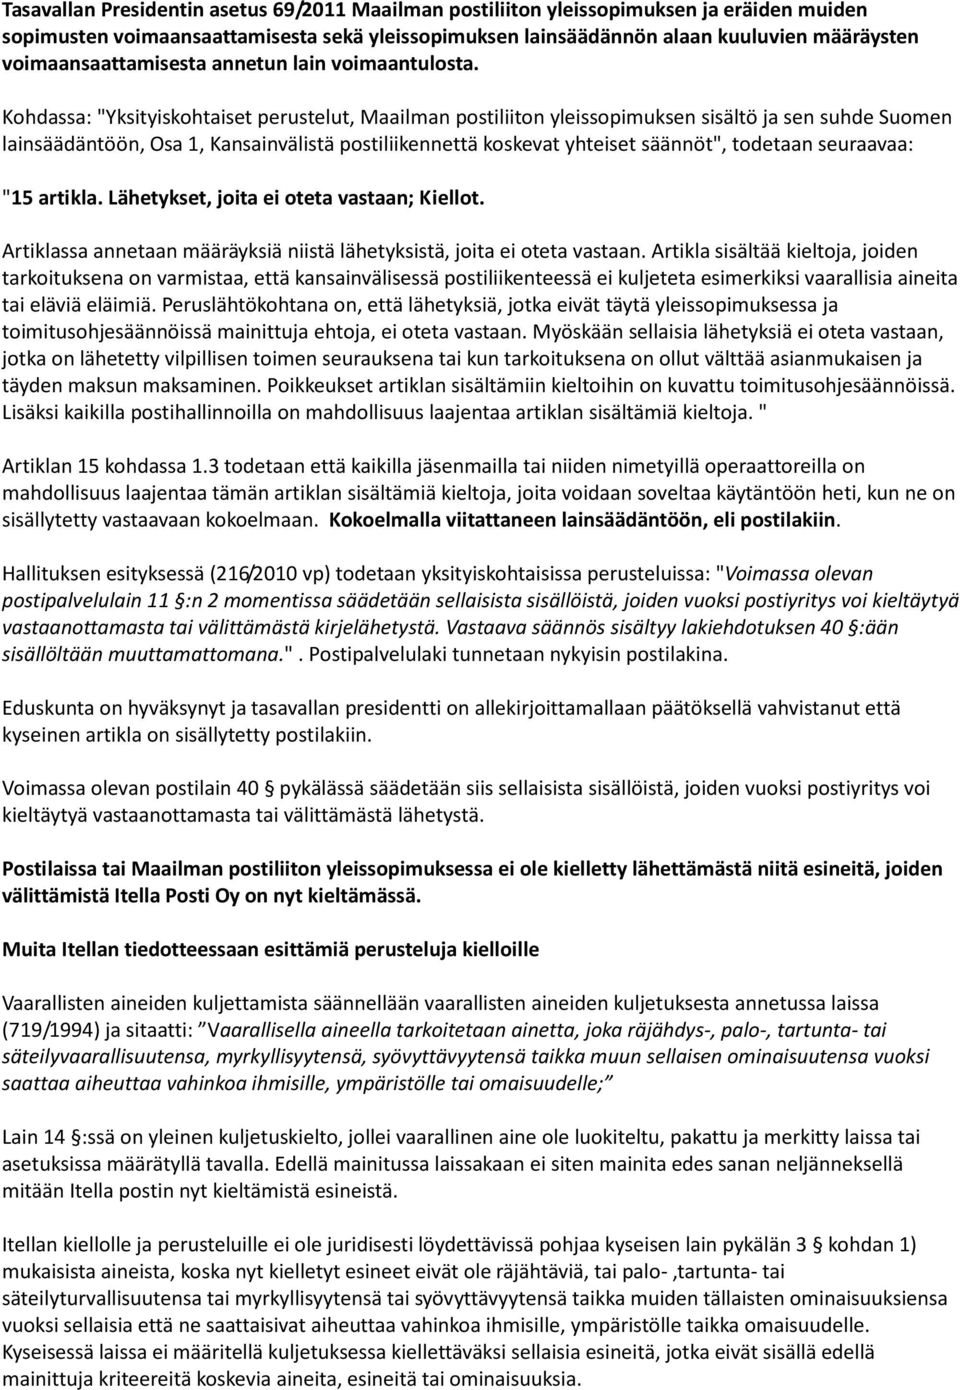 Kohdassa: "Yksityiskohtaiset perustelut, Maailman postiliiton yleissopimuksen sisältö ja sen suhde Suomen lainsäädäntöön, Osa 1, Kansainvälistä postiliikennettä koskevat yhteiset säännöt", todetaan